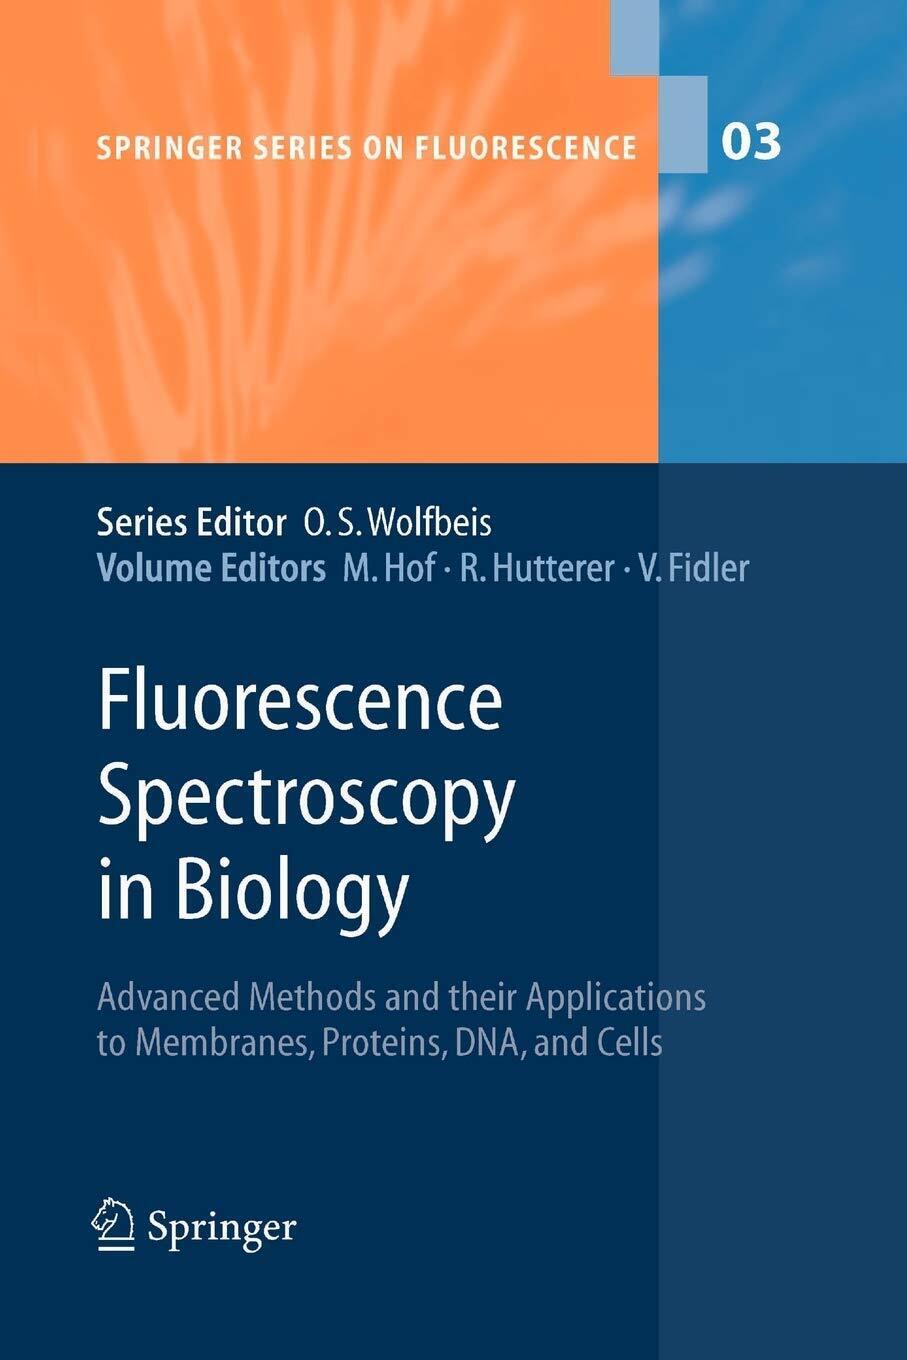 Fluorescence Spectroscopy in Biology - Martin Hof - Springer, 2010